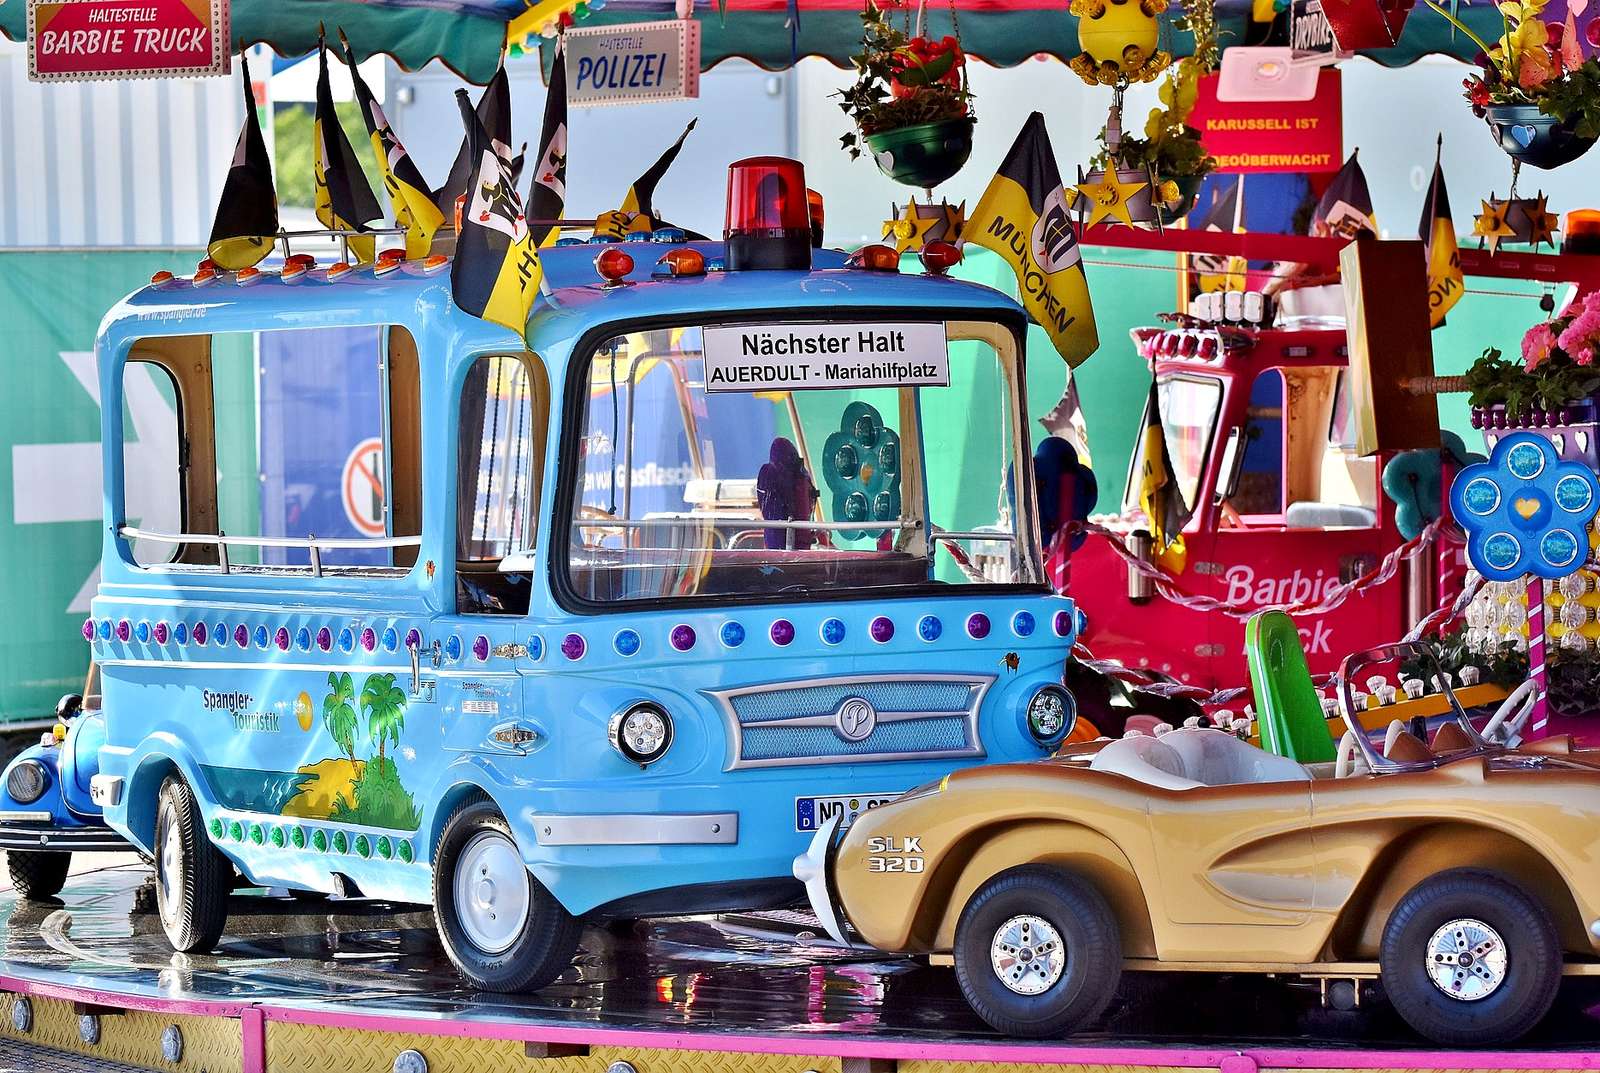 Carrousel met voertuigen tijdens Oktoberfest online puzzel